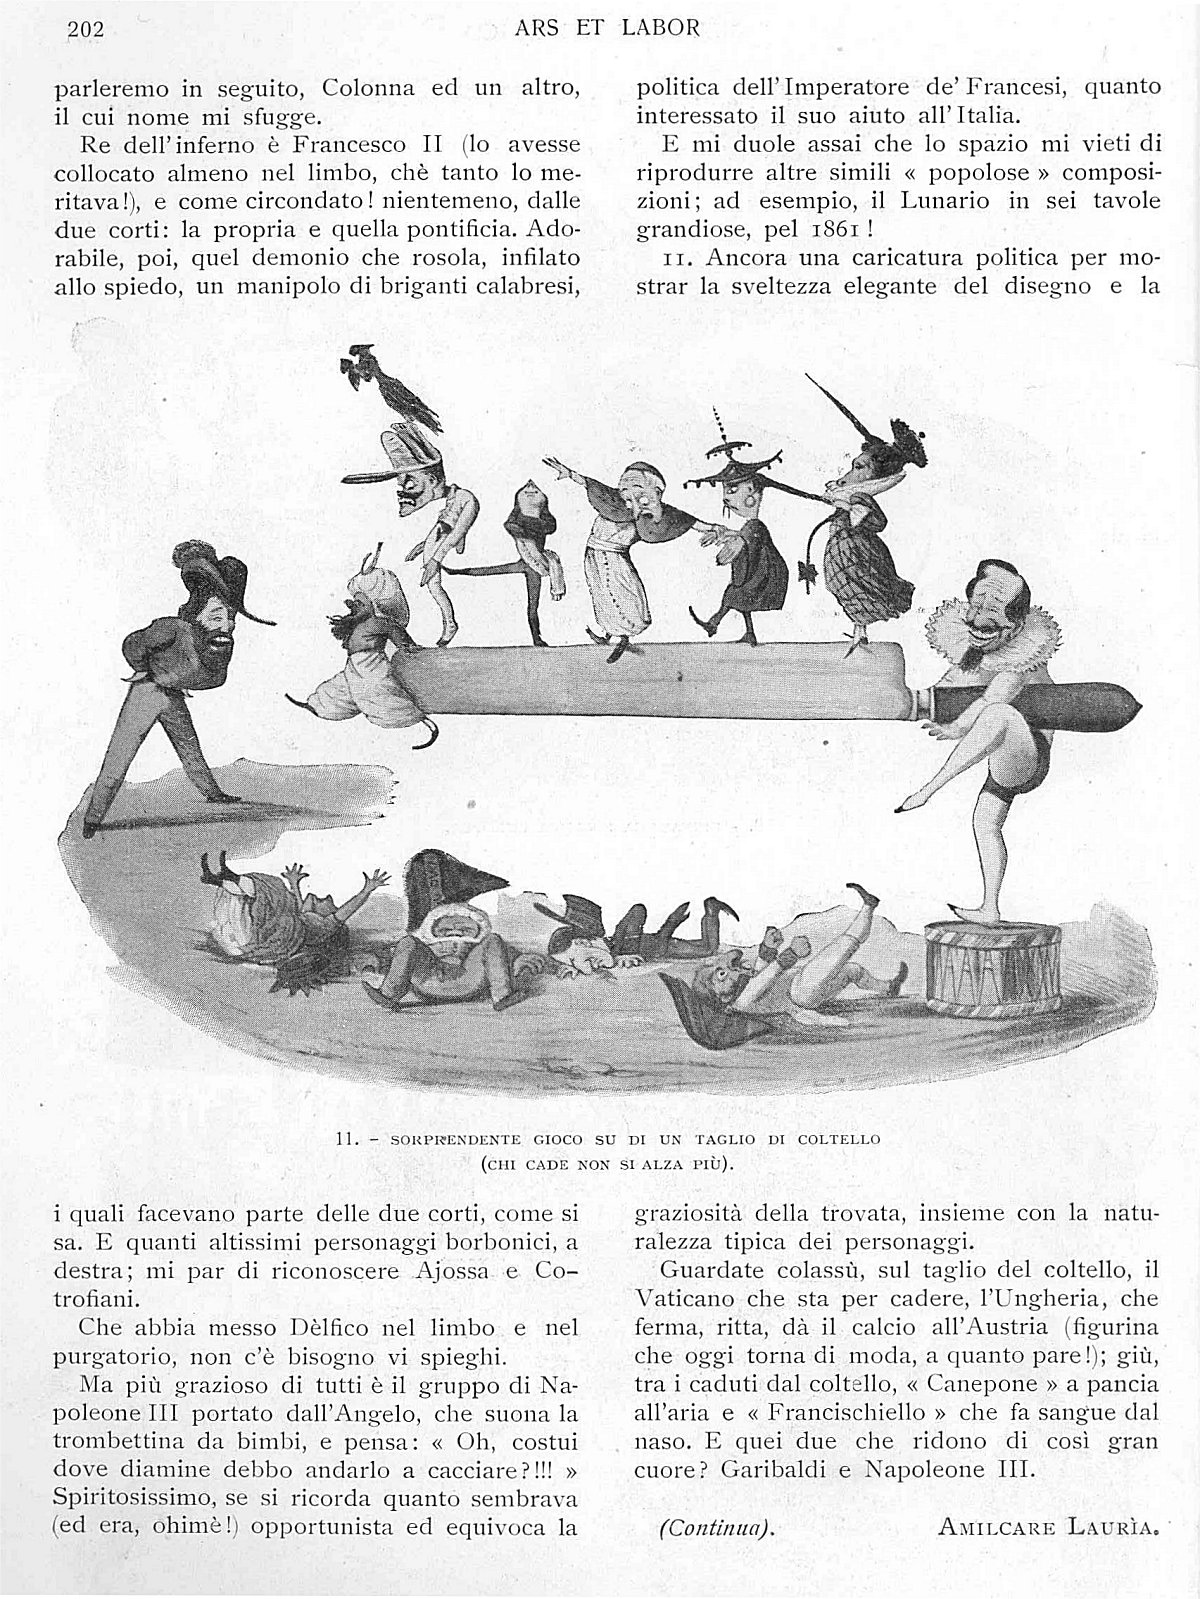 "Ars et Labor", Marzo 1906, anno 61°, n. 3, pag. 202 (fine 1° parte)